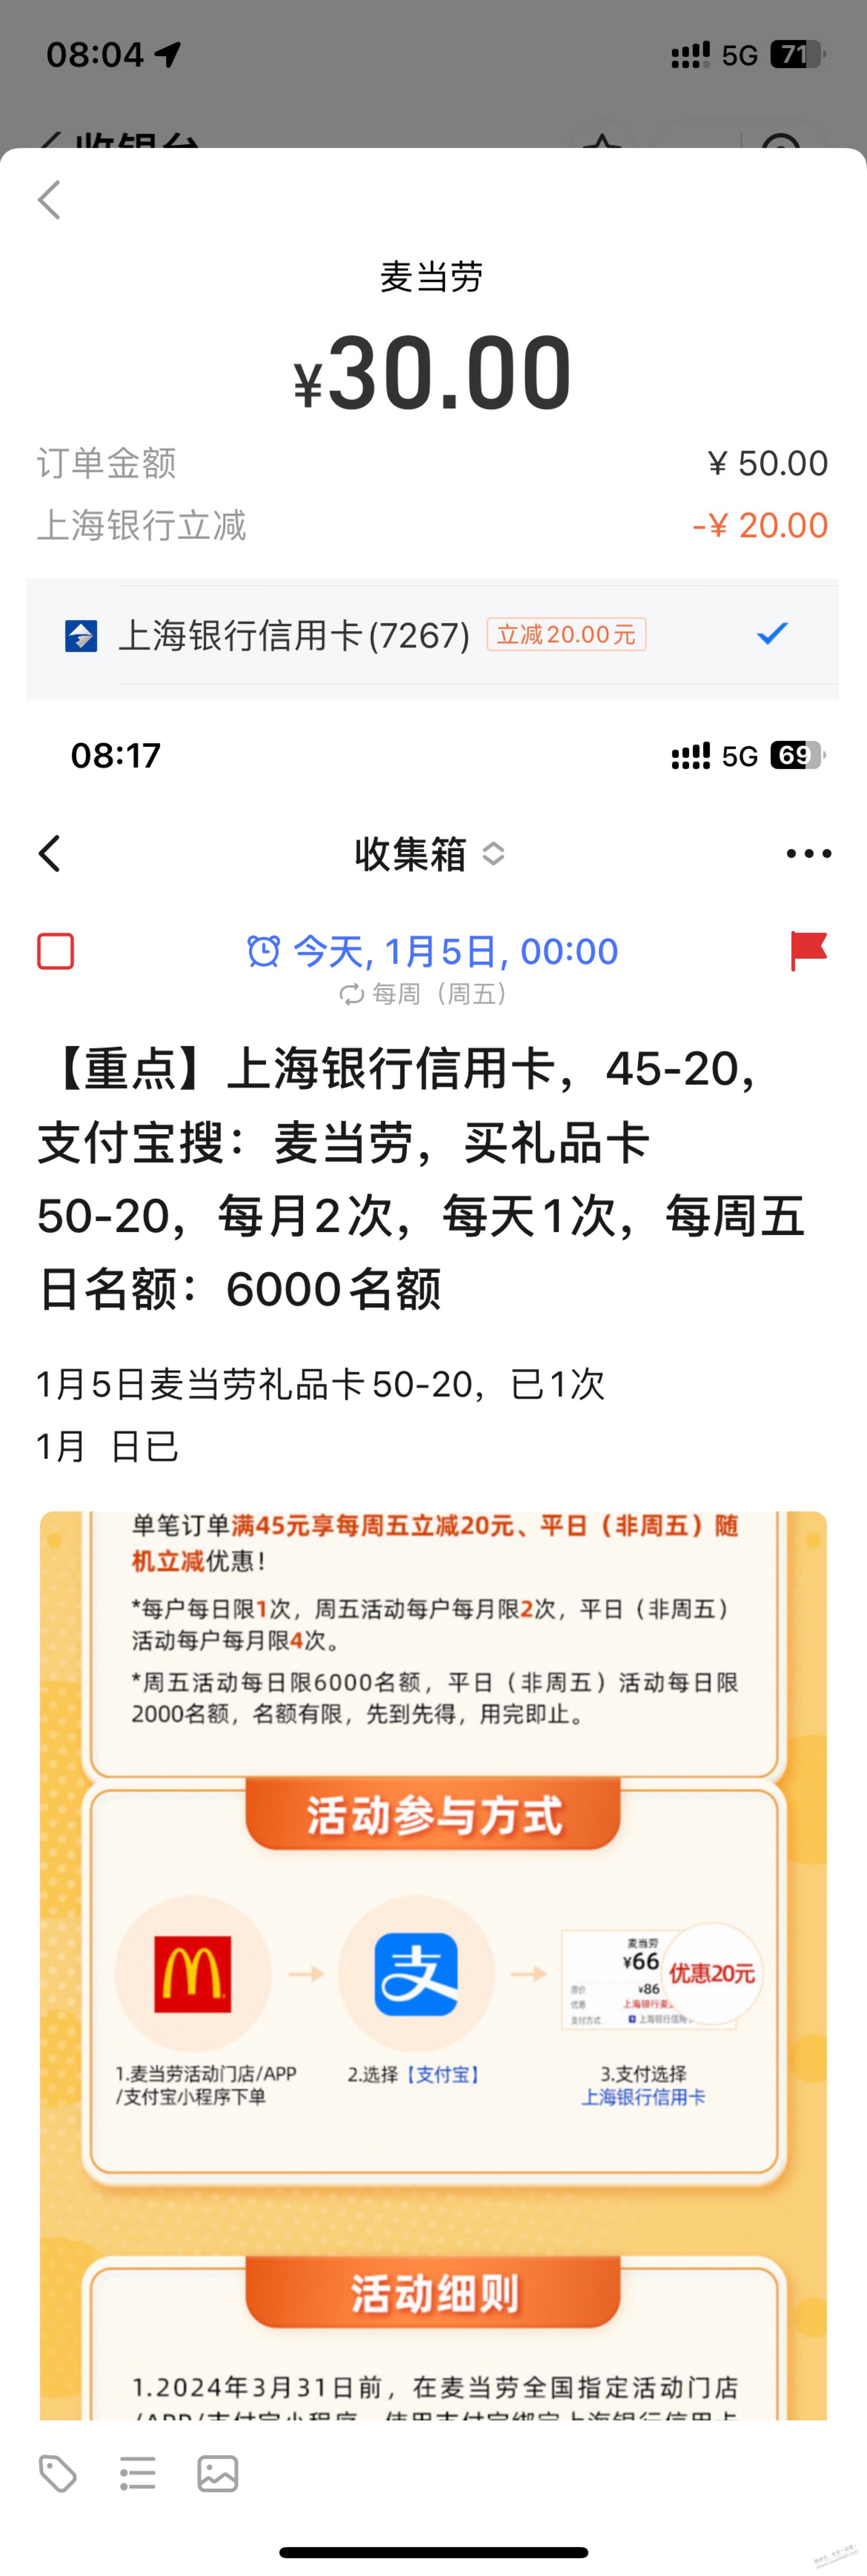 ……上海xyk 50-20-麦当劳礼品卡-还有-惠小助(52huixz.com)